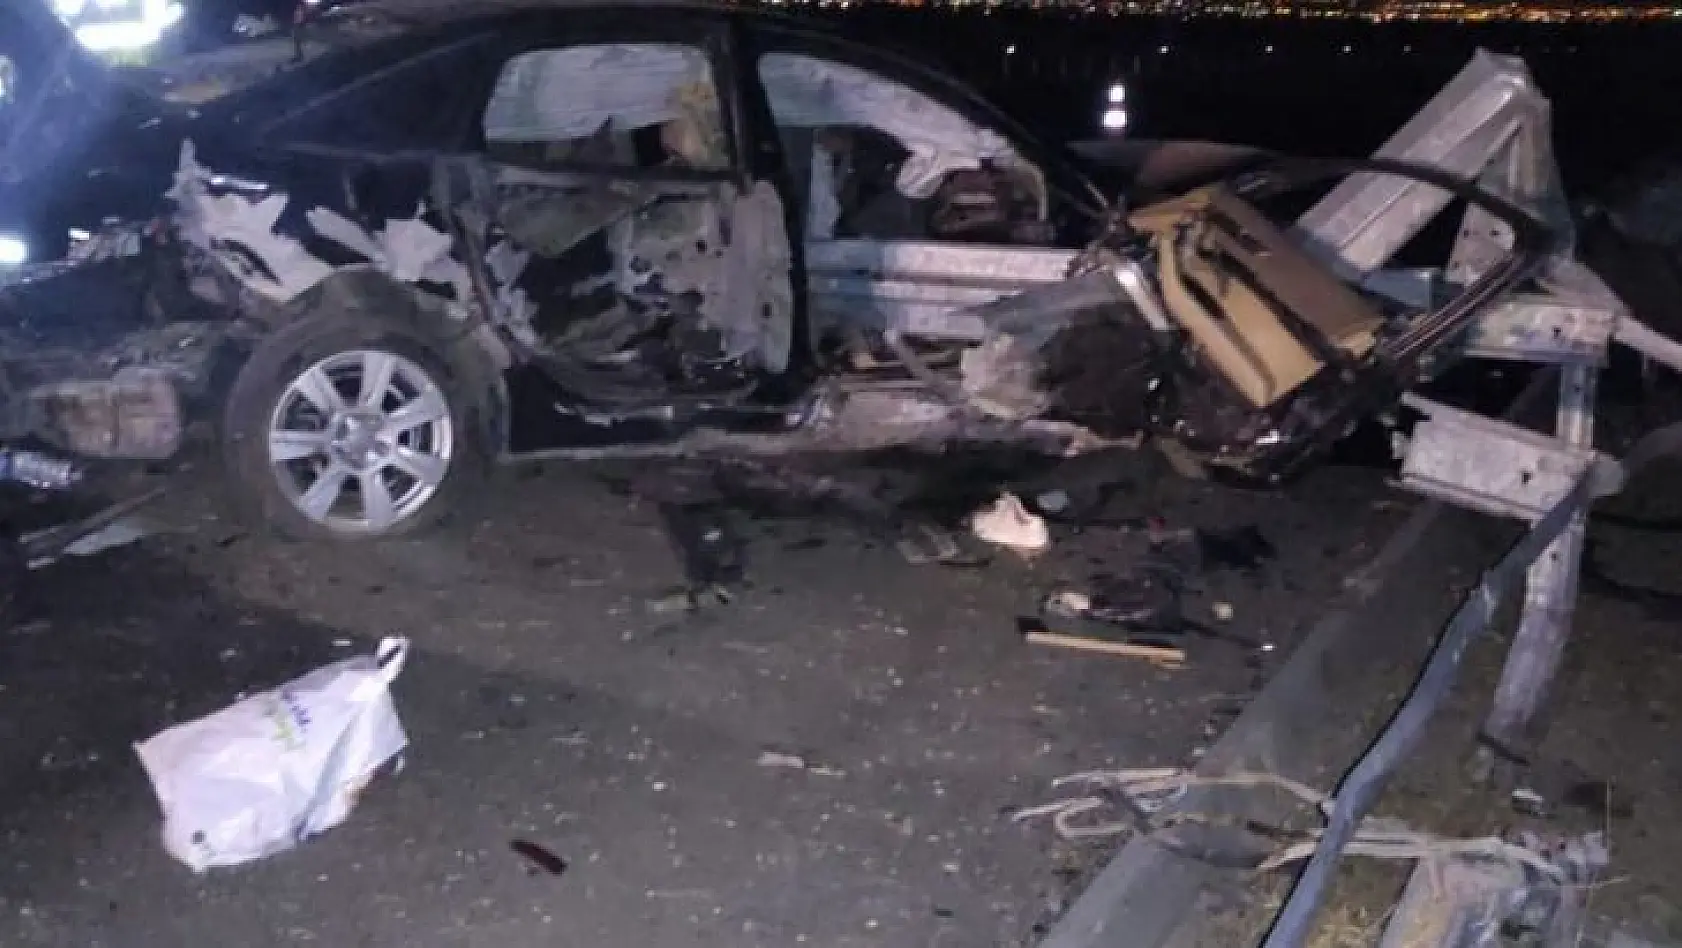 Manisa'da otomobil bariyerlere çarptı: 4 ağır yaralı